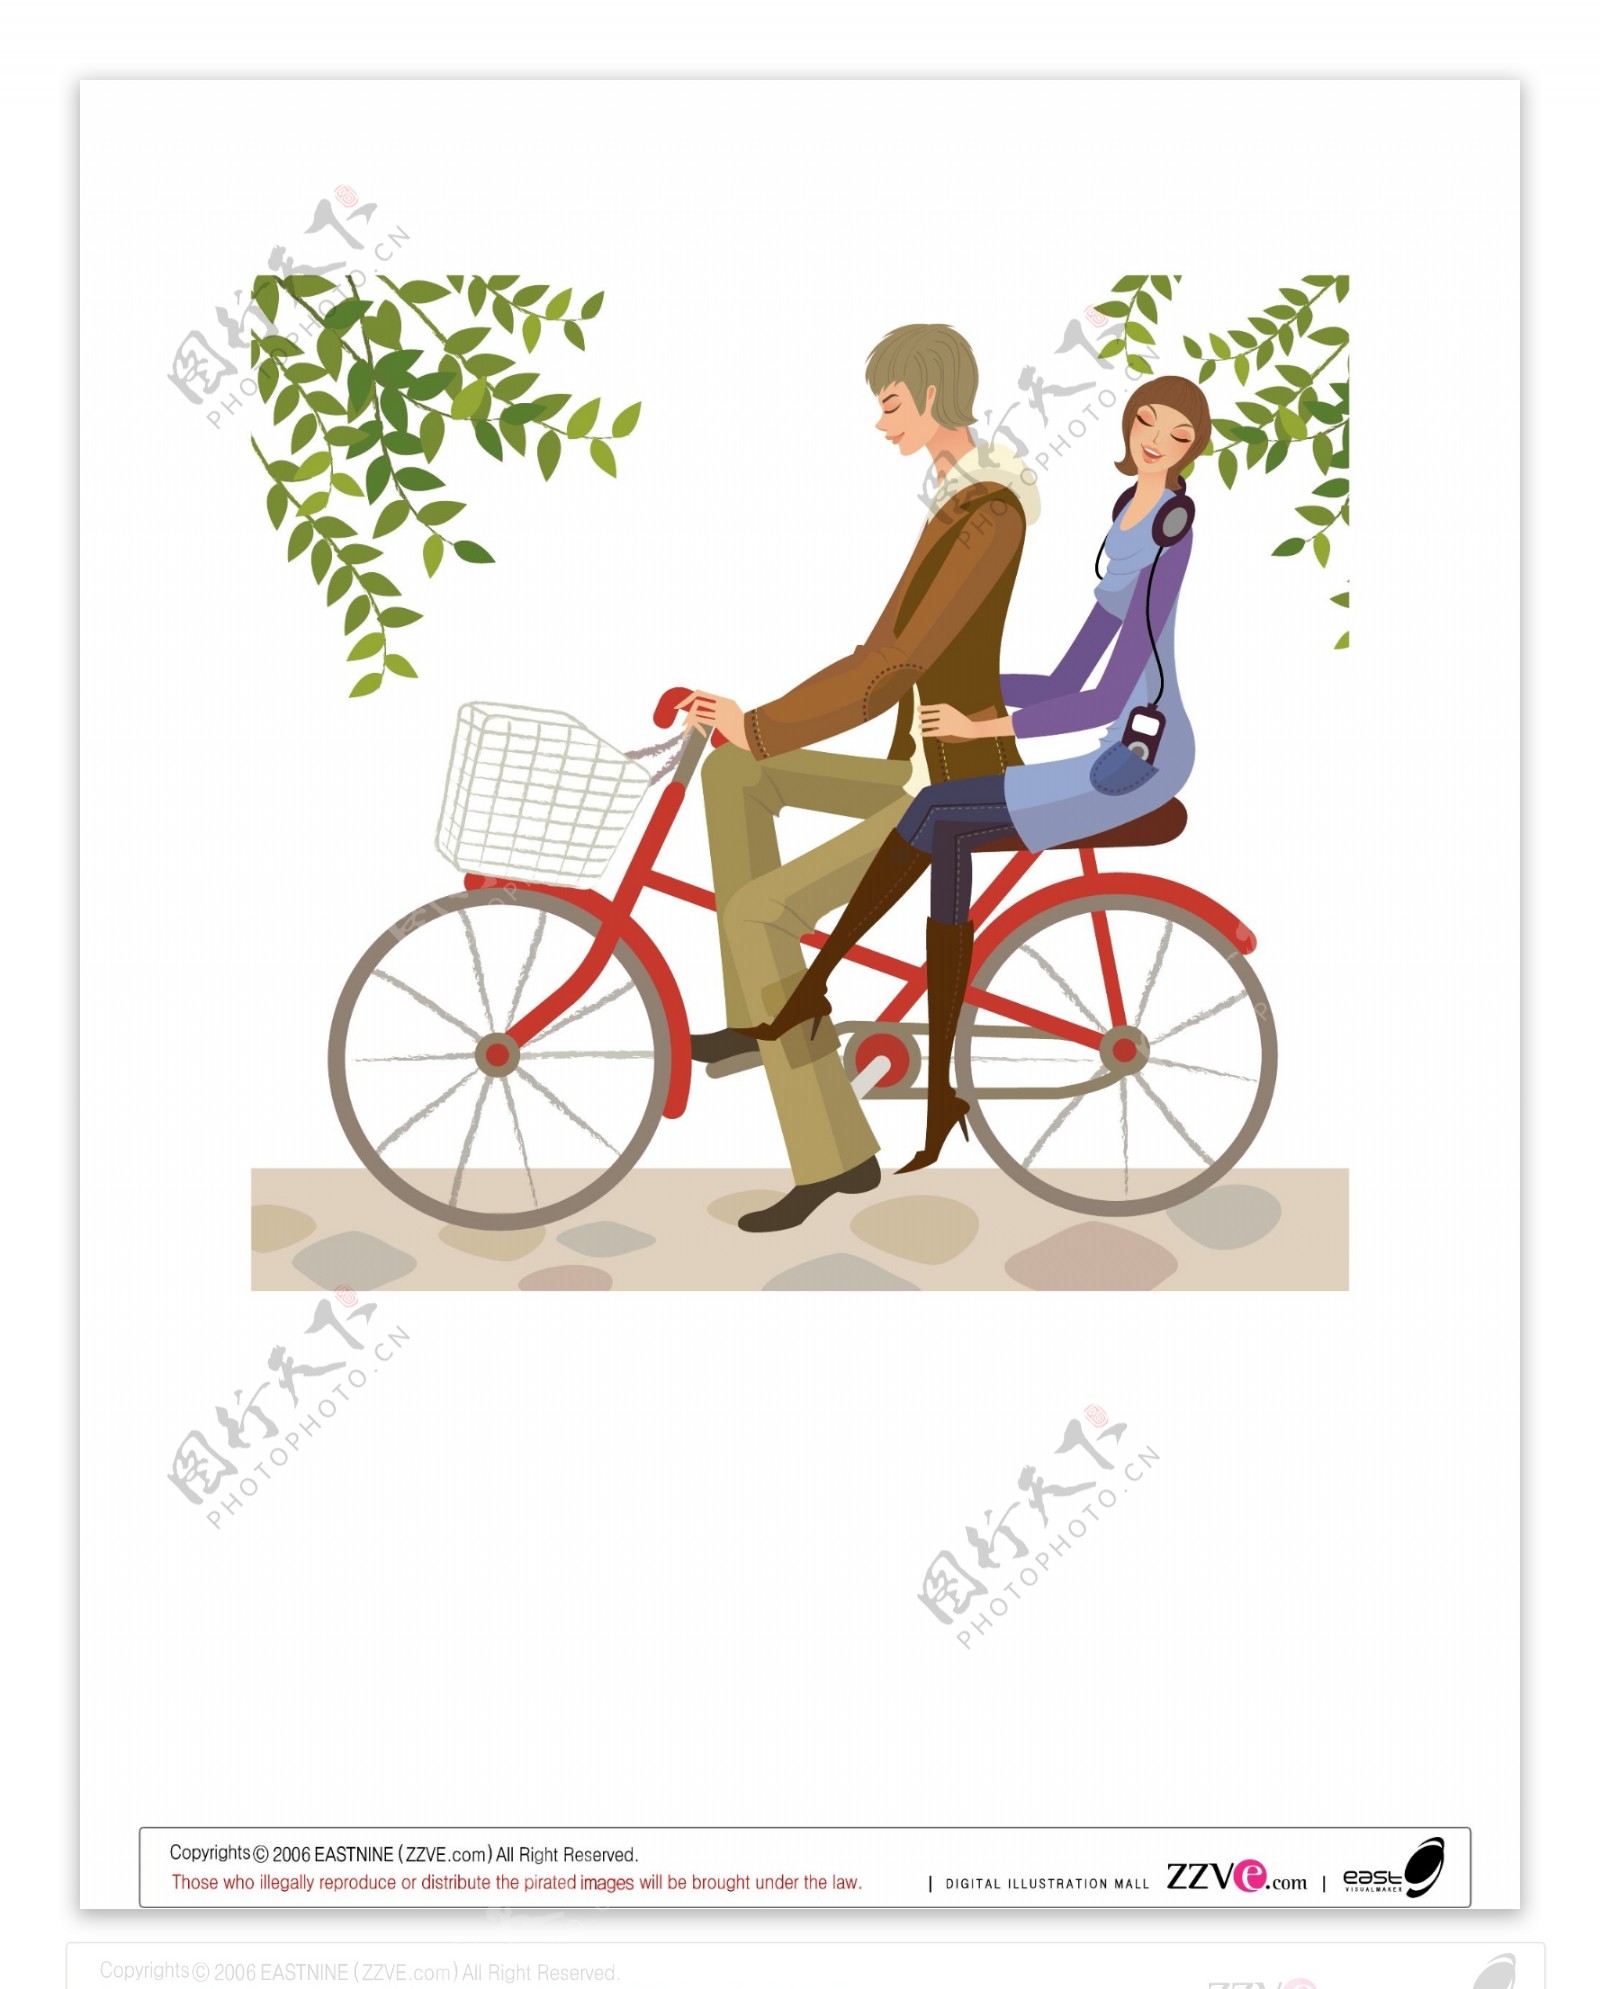 时尚生活男女骑自行车图片